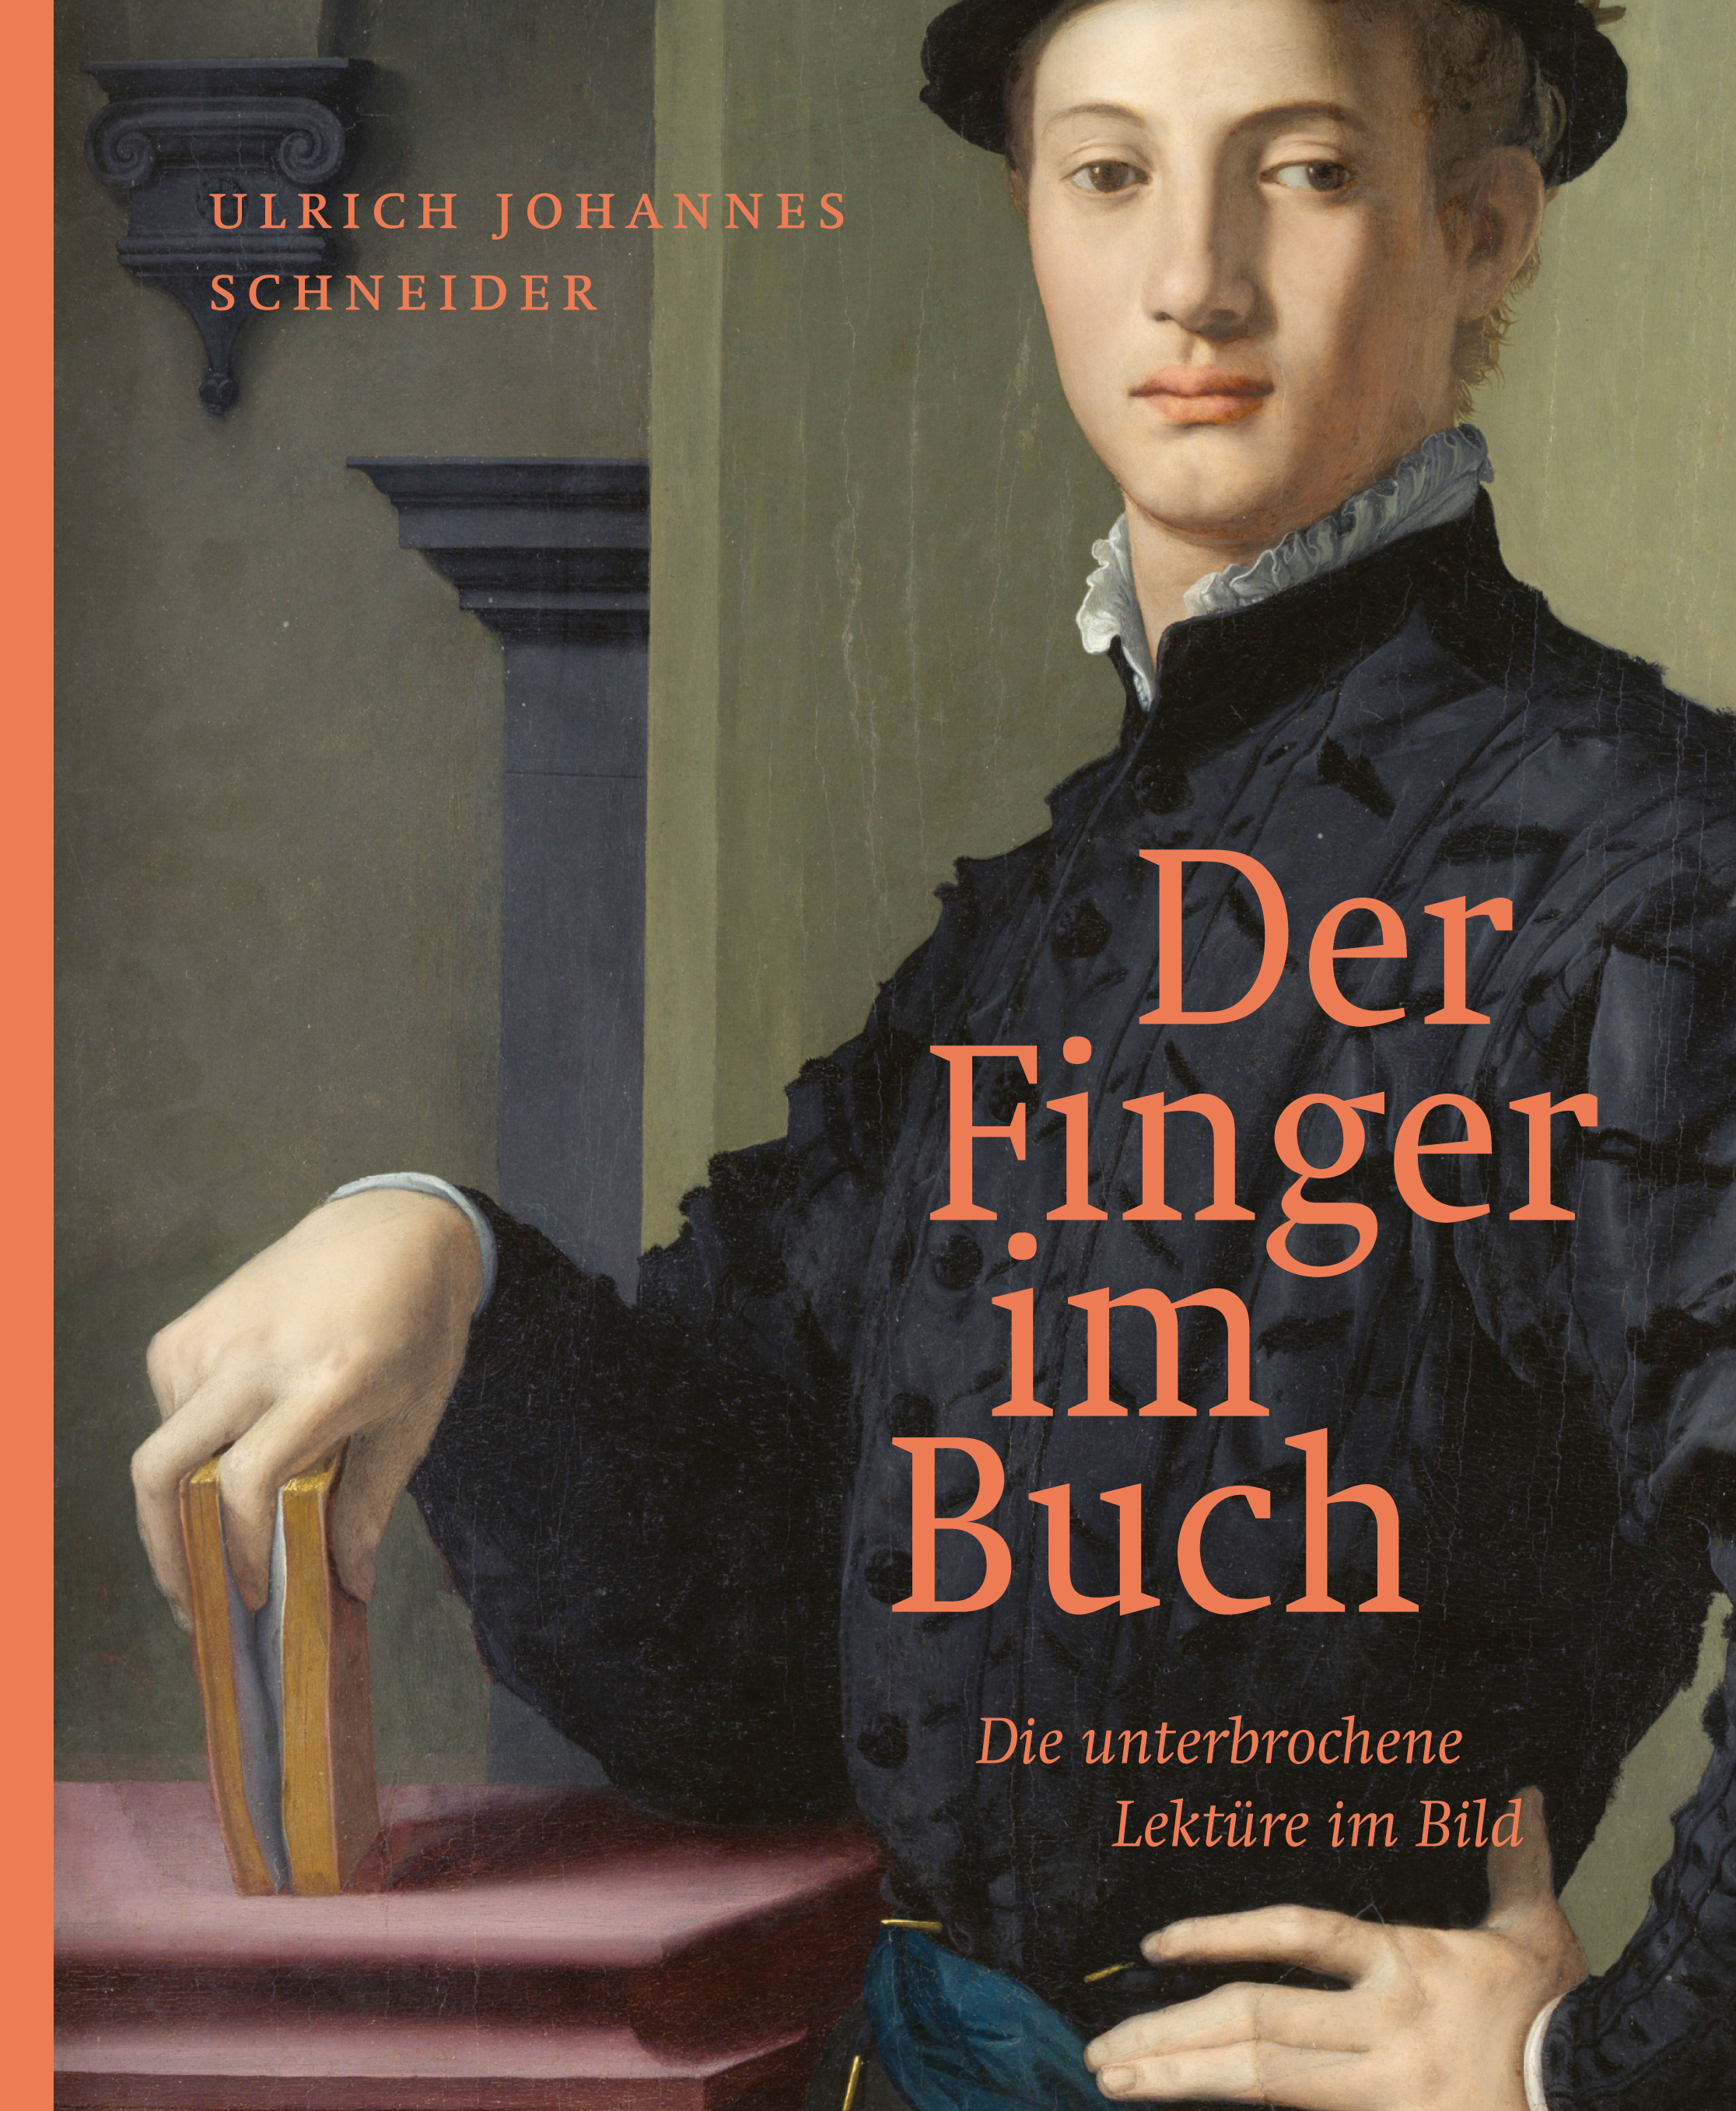 Ulrich J. Schneider – Der Finger im Buch